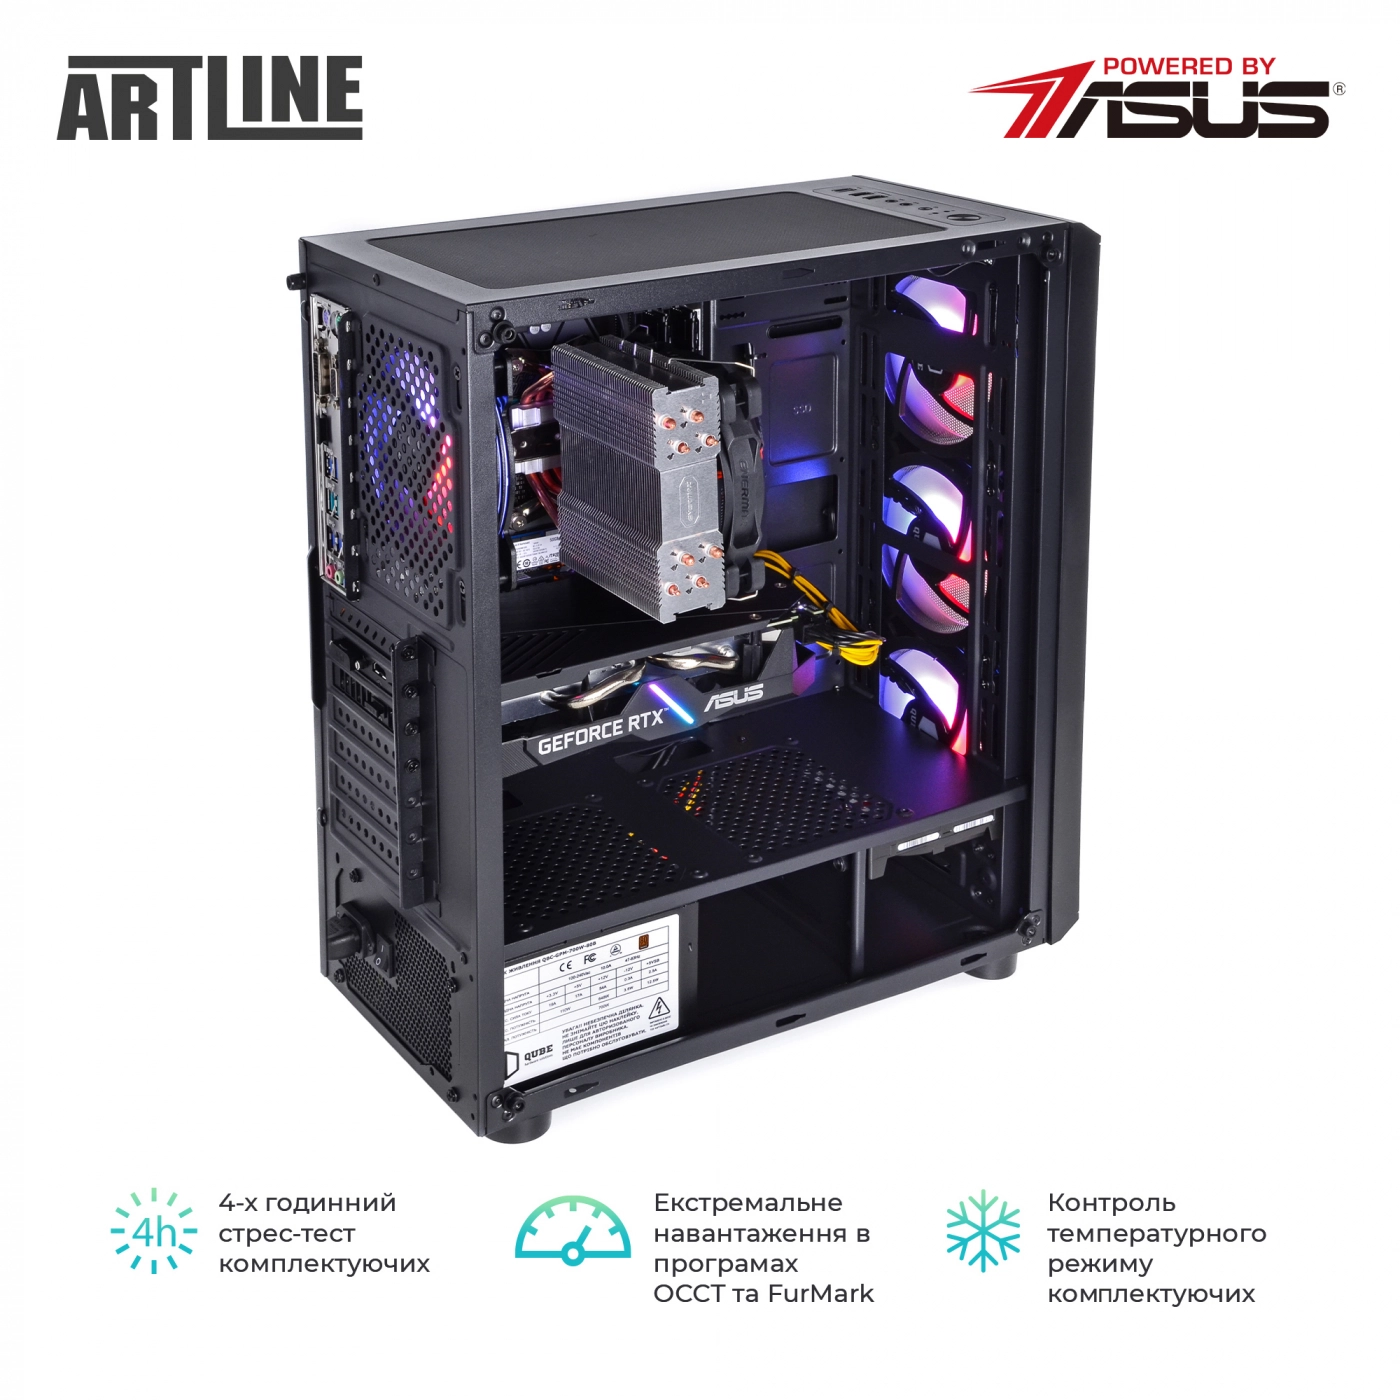 Купить Компьютер ARTLINE Gaming X55v39 - фото 8